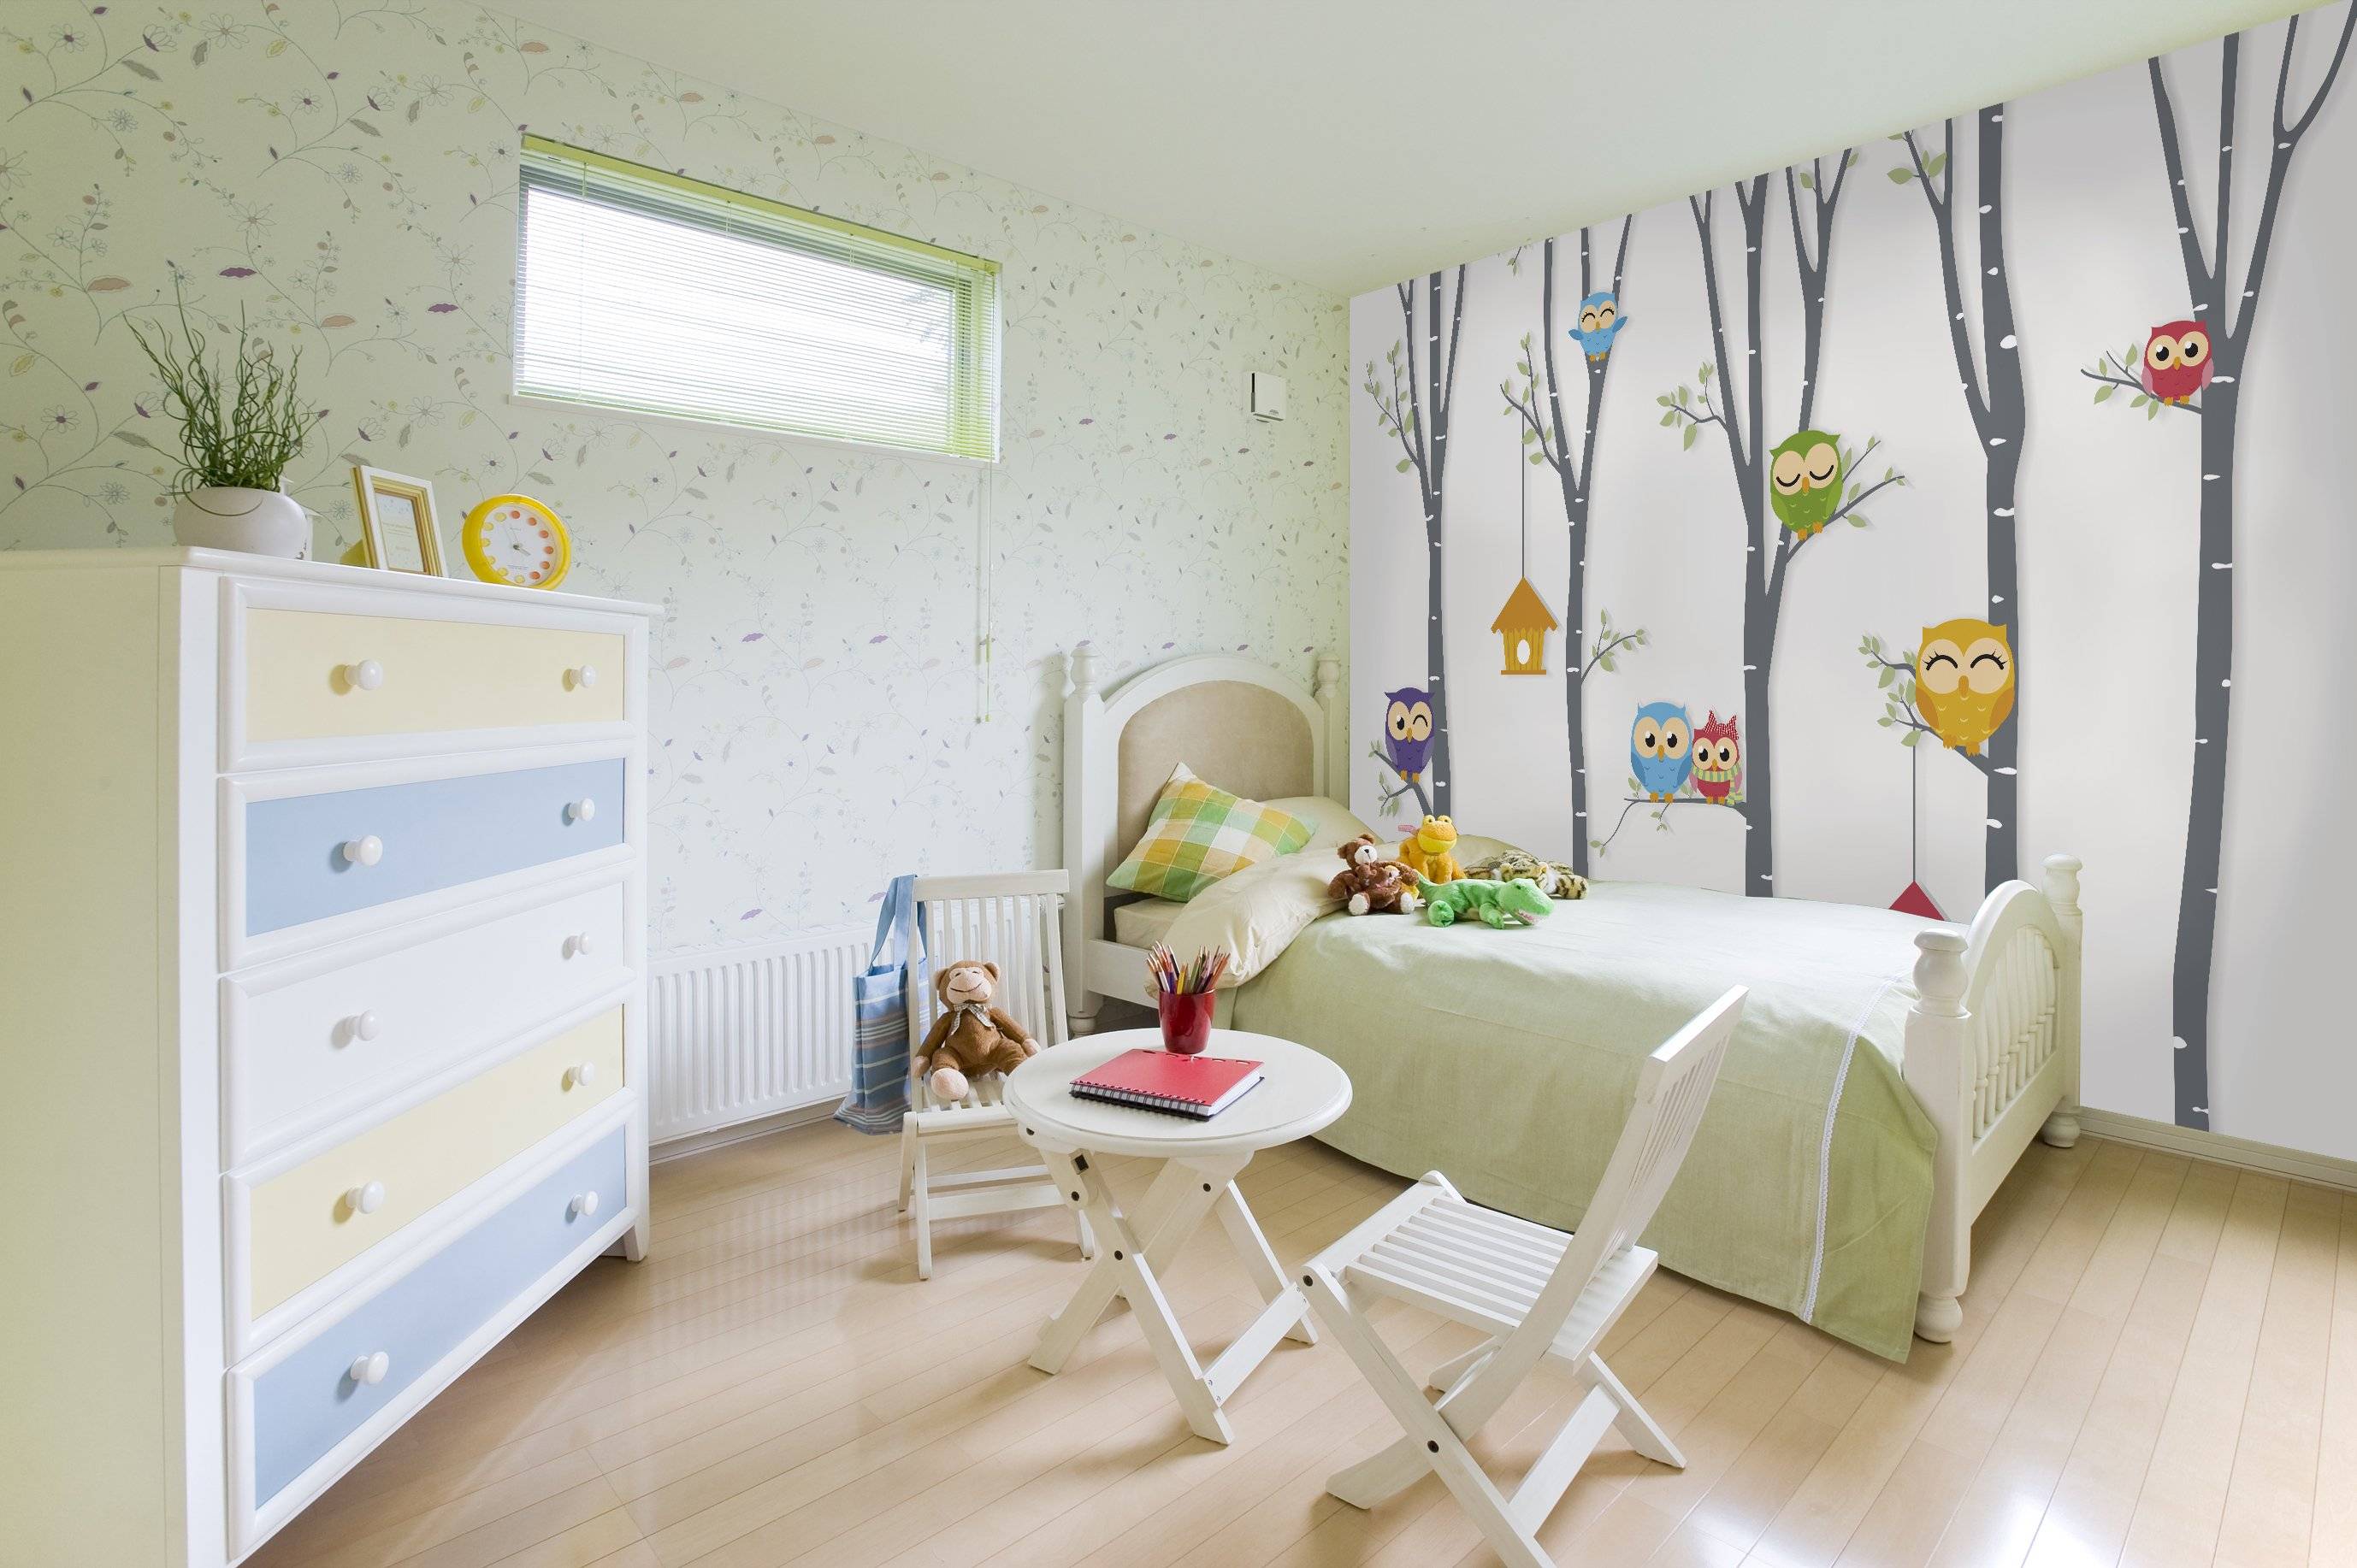 Обои комбинированные для детской комнаты: скомпоновать цвета, идеи декорирования, для мальчика